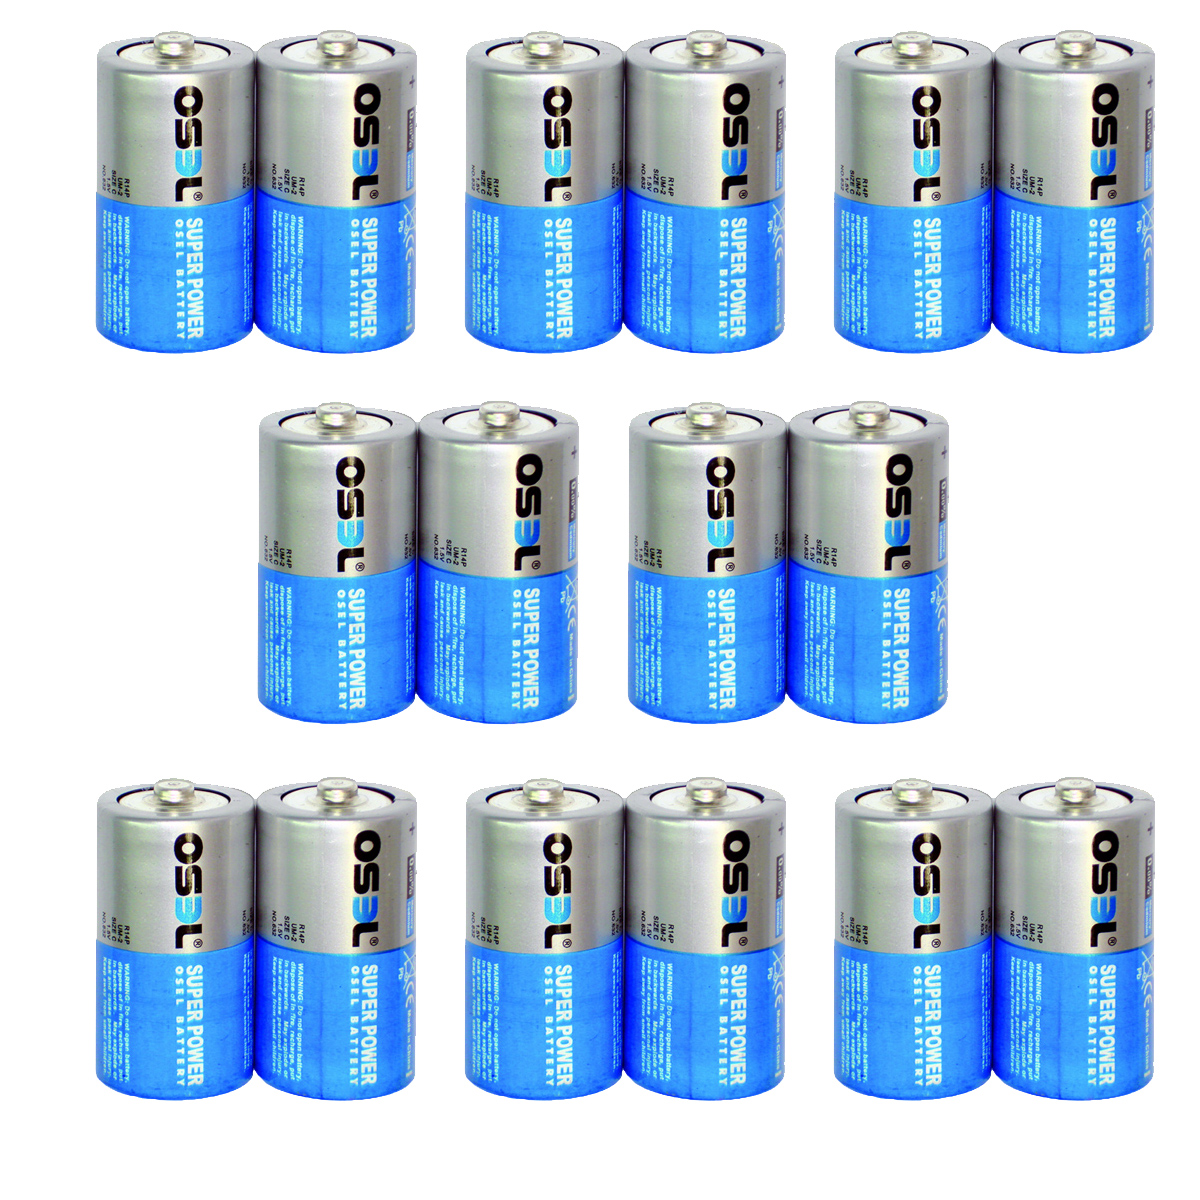 باتری C اوسل سایز متوسط کد 22 بسته 16 عددی